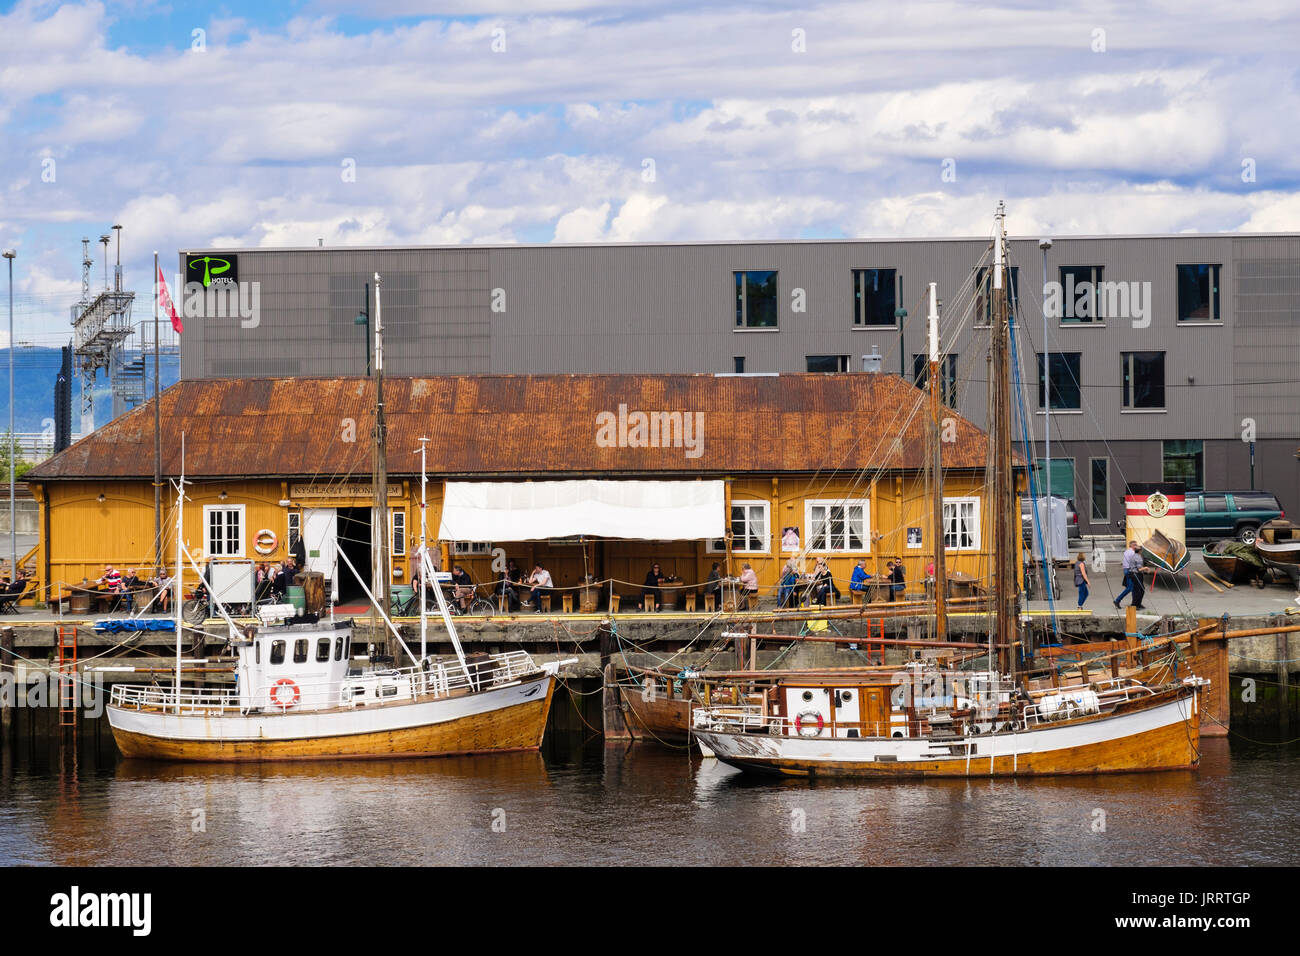 Les bateaux de pêche traditionnels en bois amarré sur la rivière Nidelva quay par riverside cafe. Trondheim, Sør-Trøndelag, Norvège, Scandinavie, Europe Banque D'Images